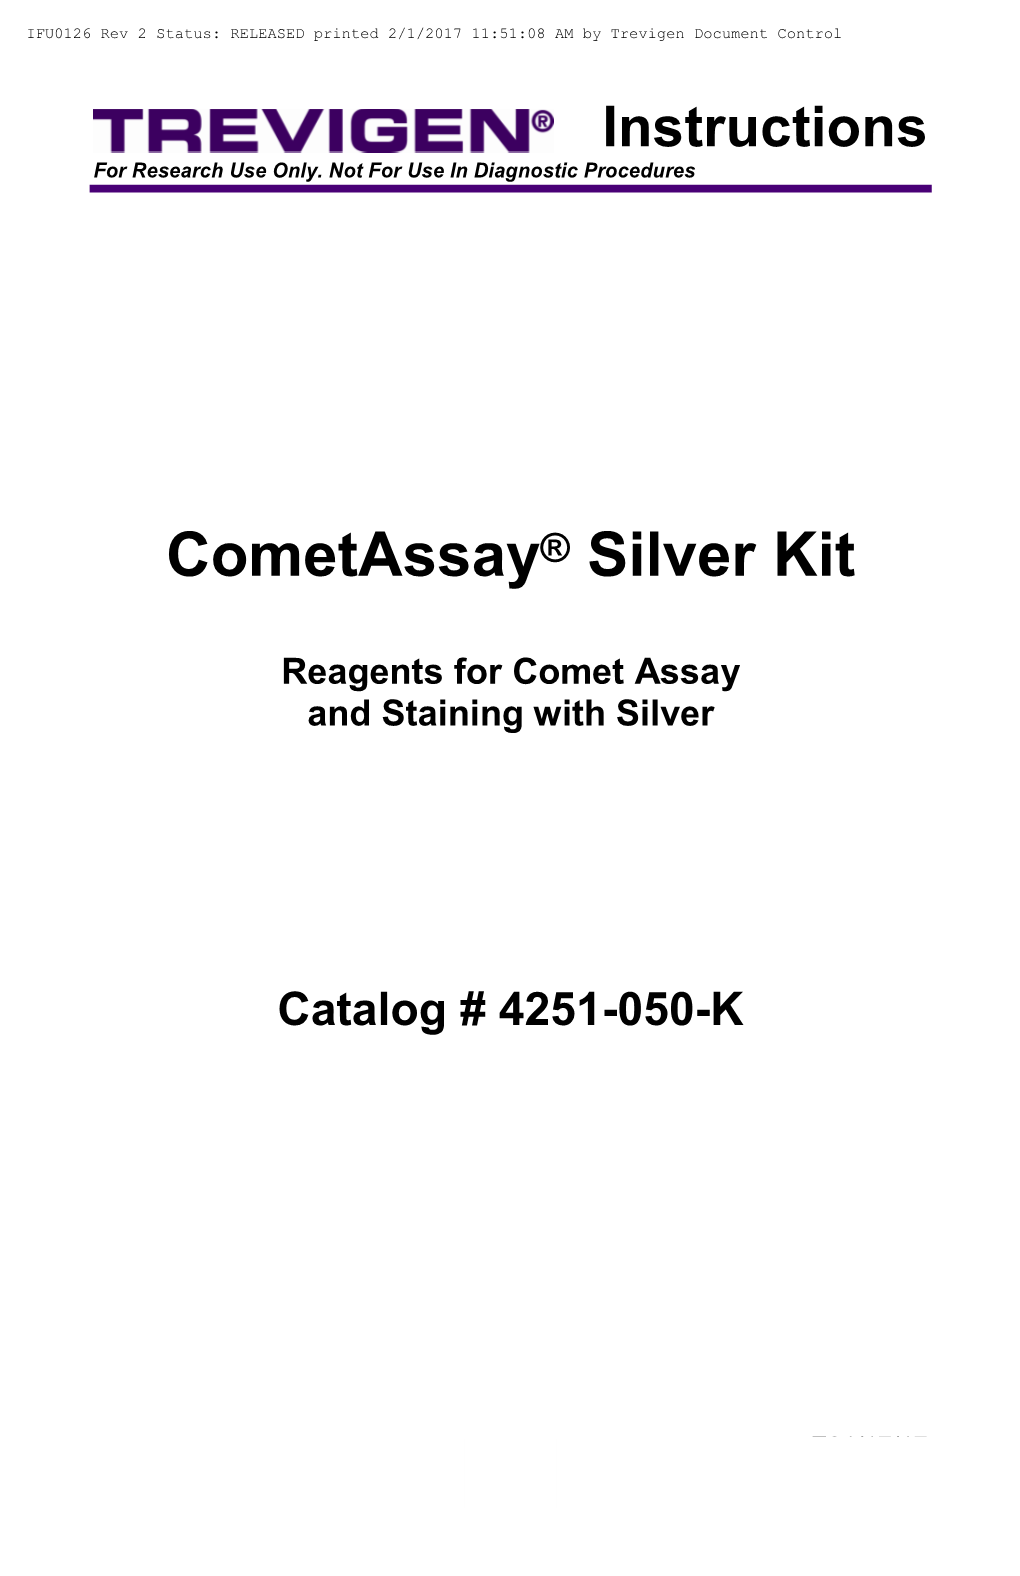 Cometassay® Silver Kit